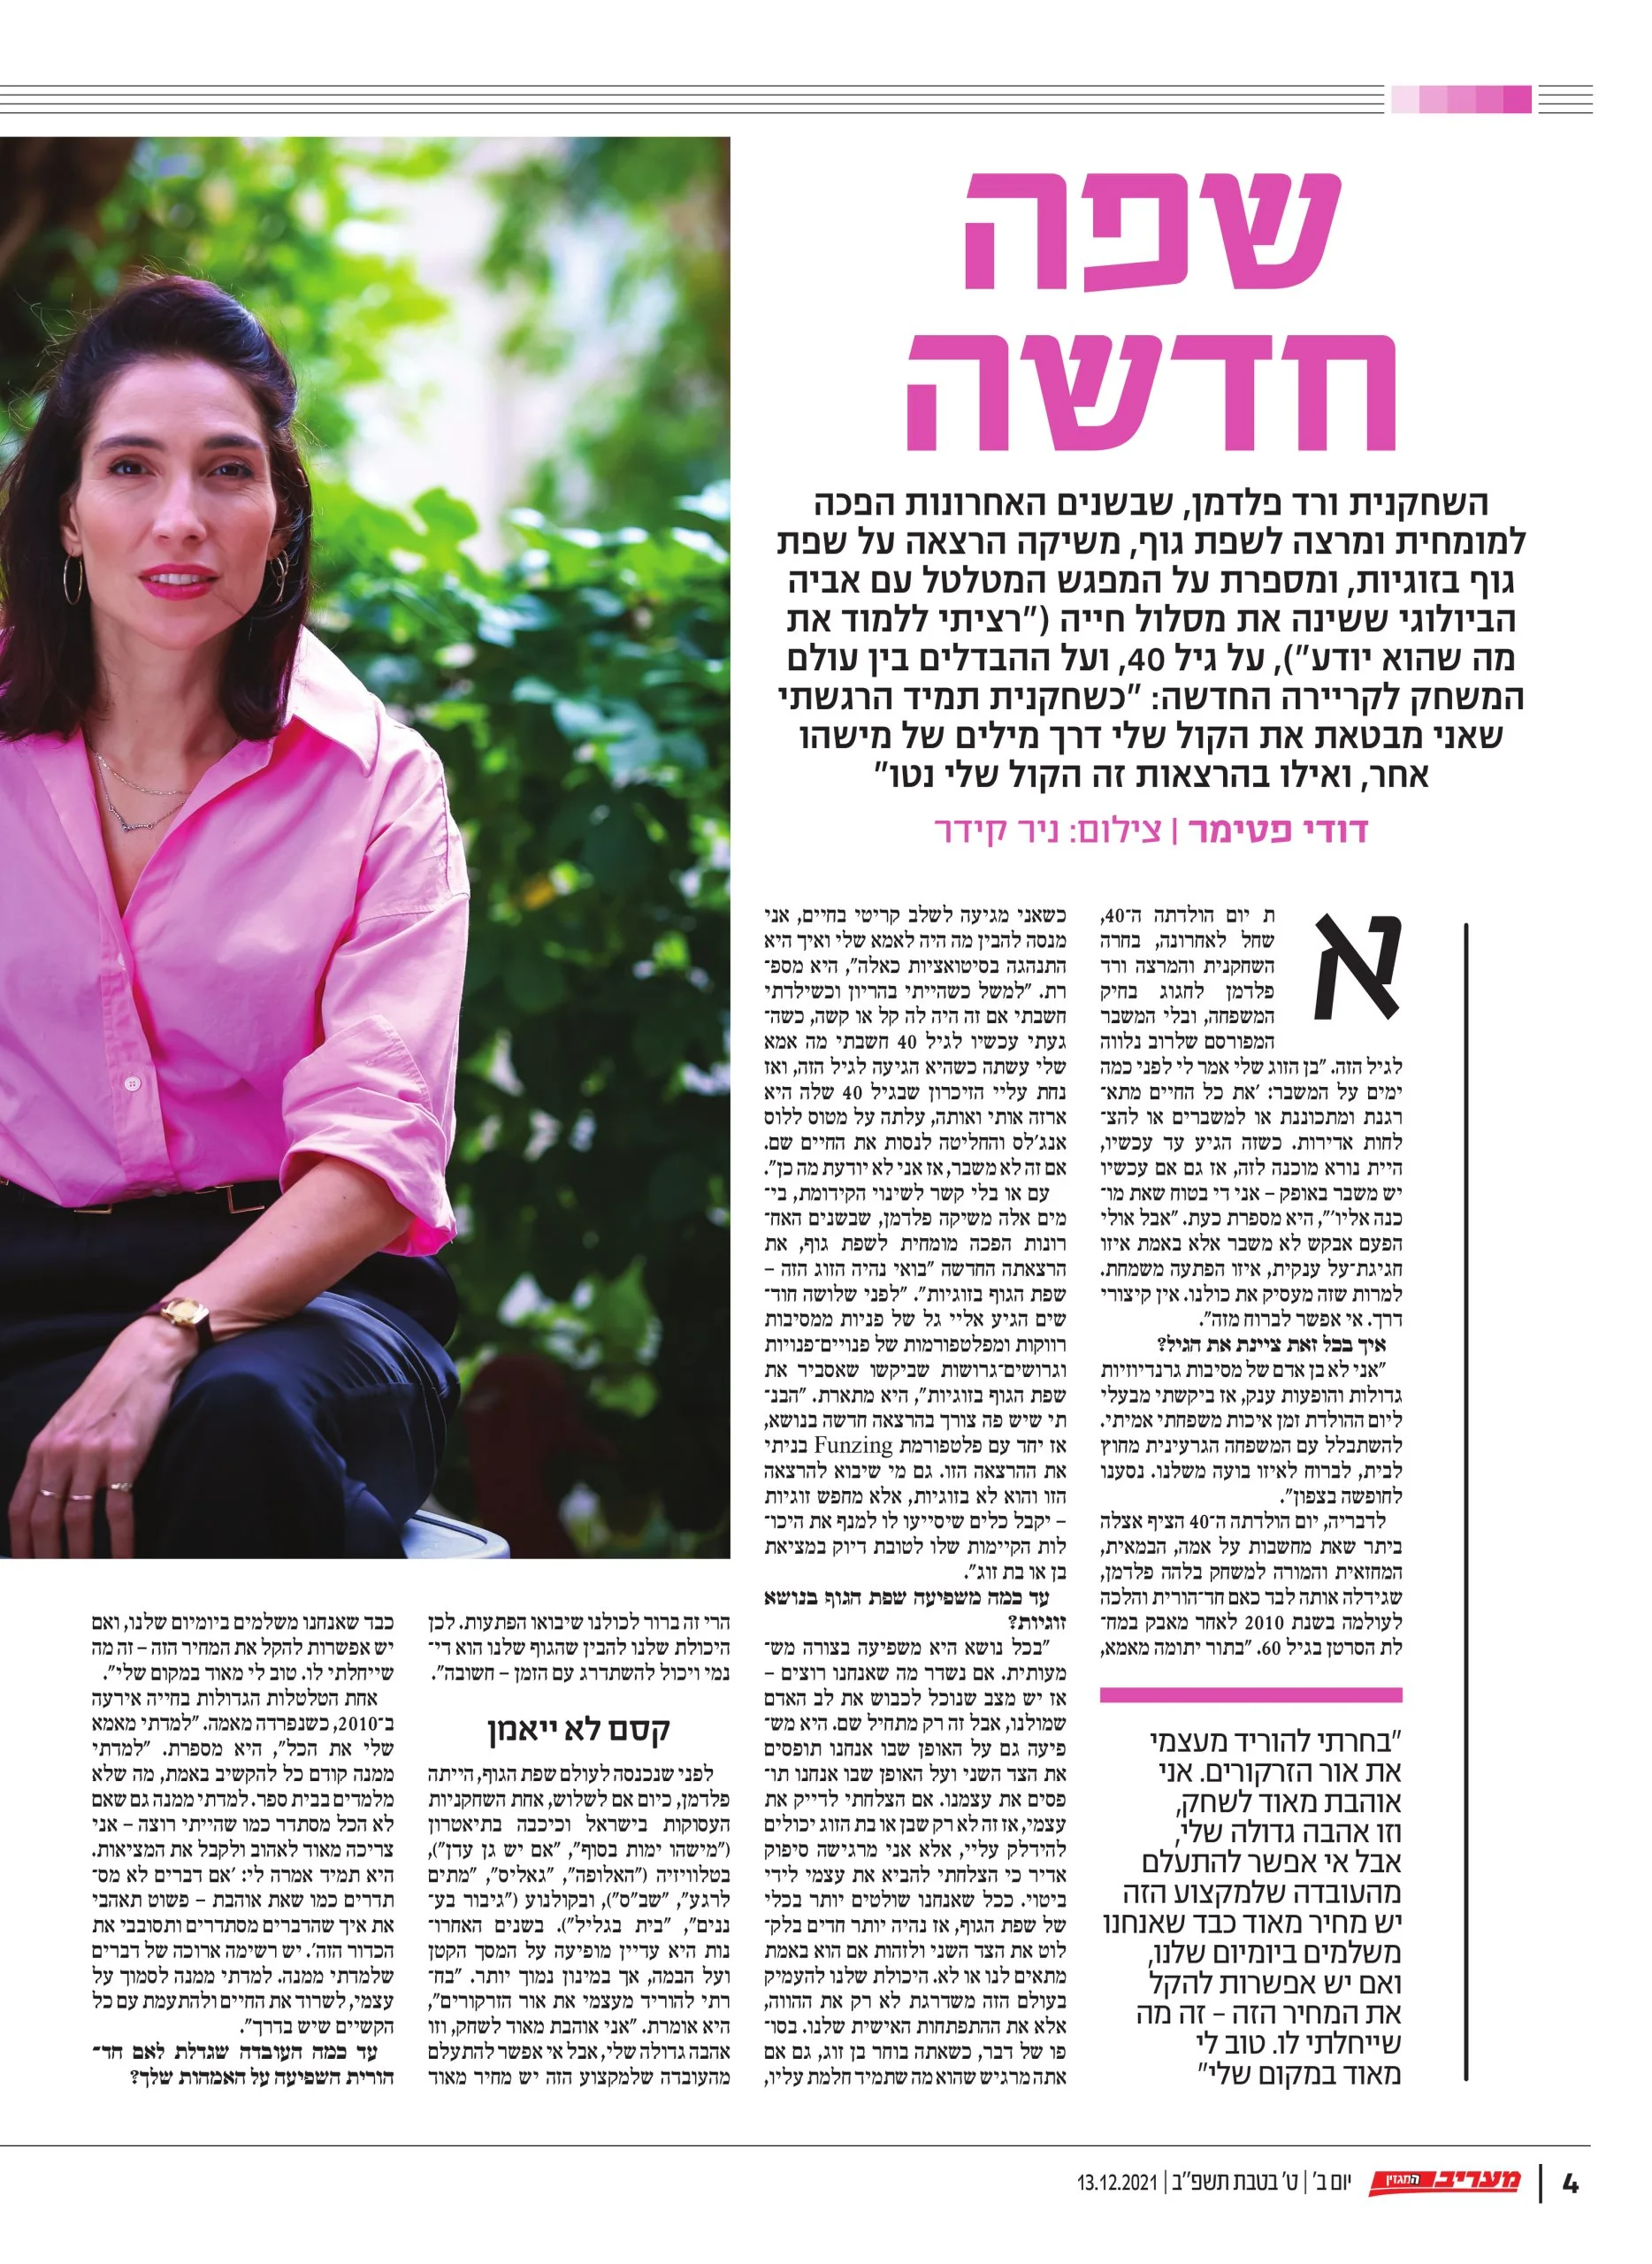 Article-Vard-Feldman-Magazine-Maariv1